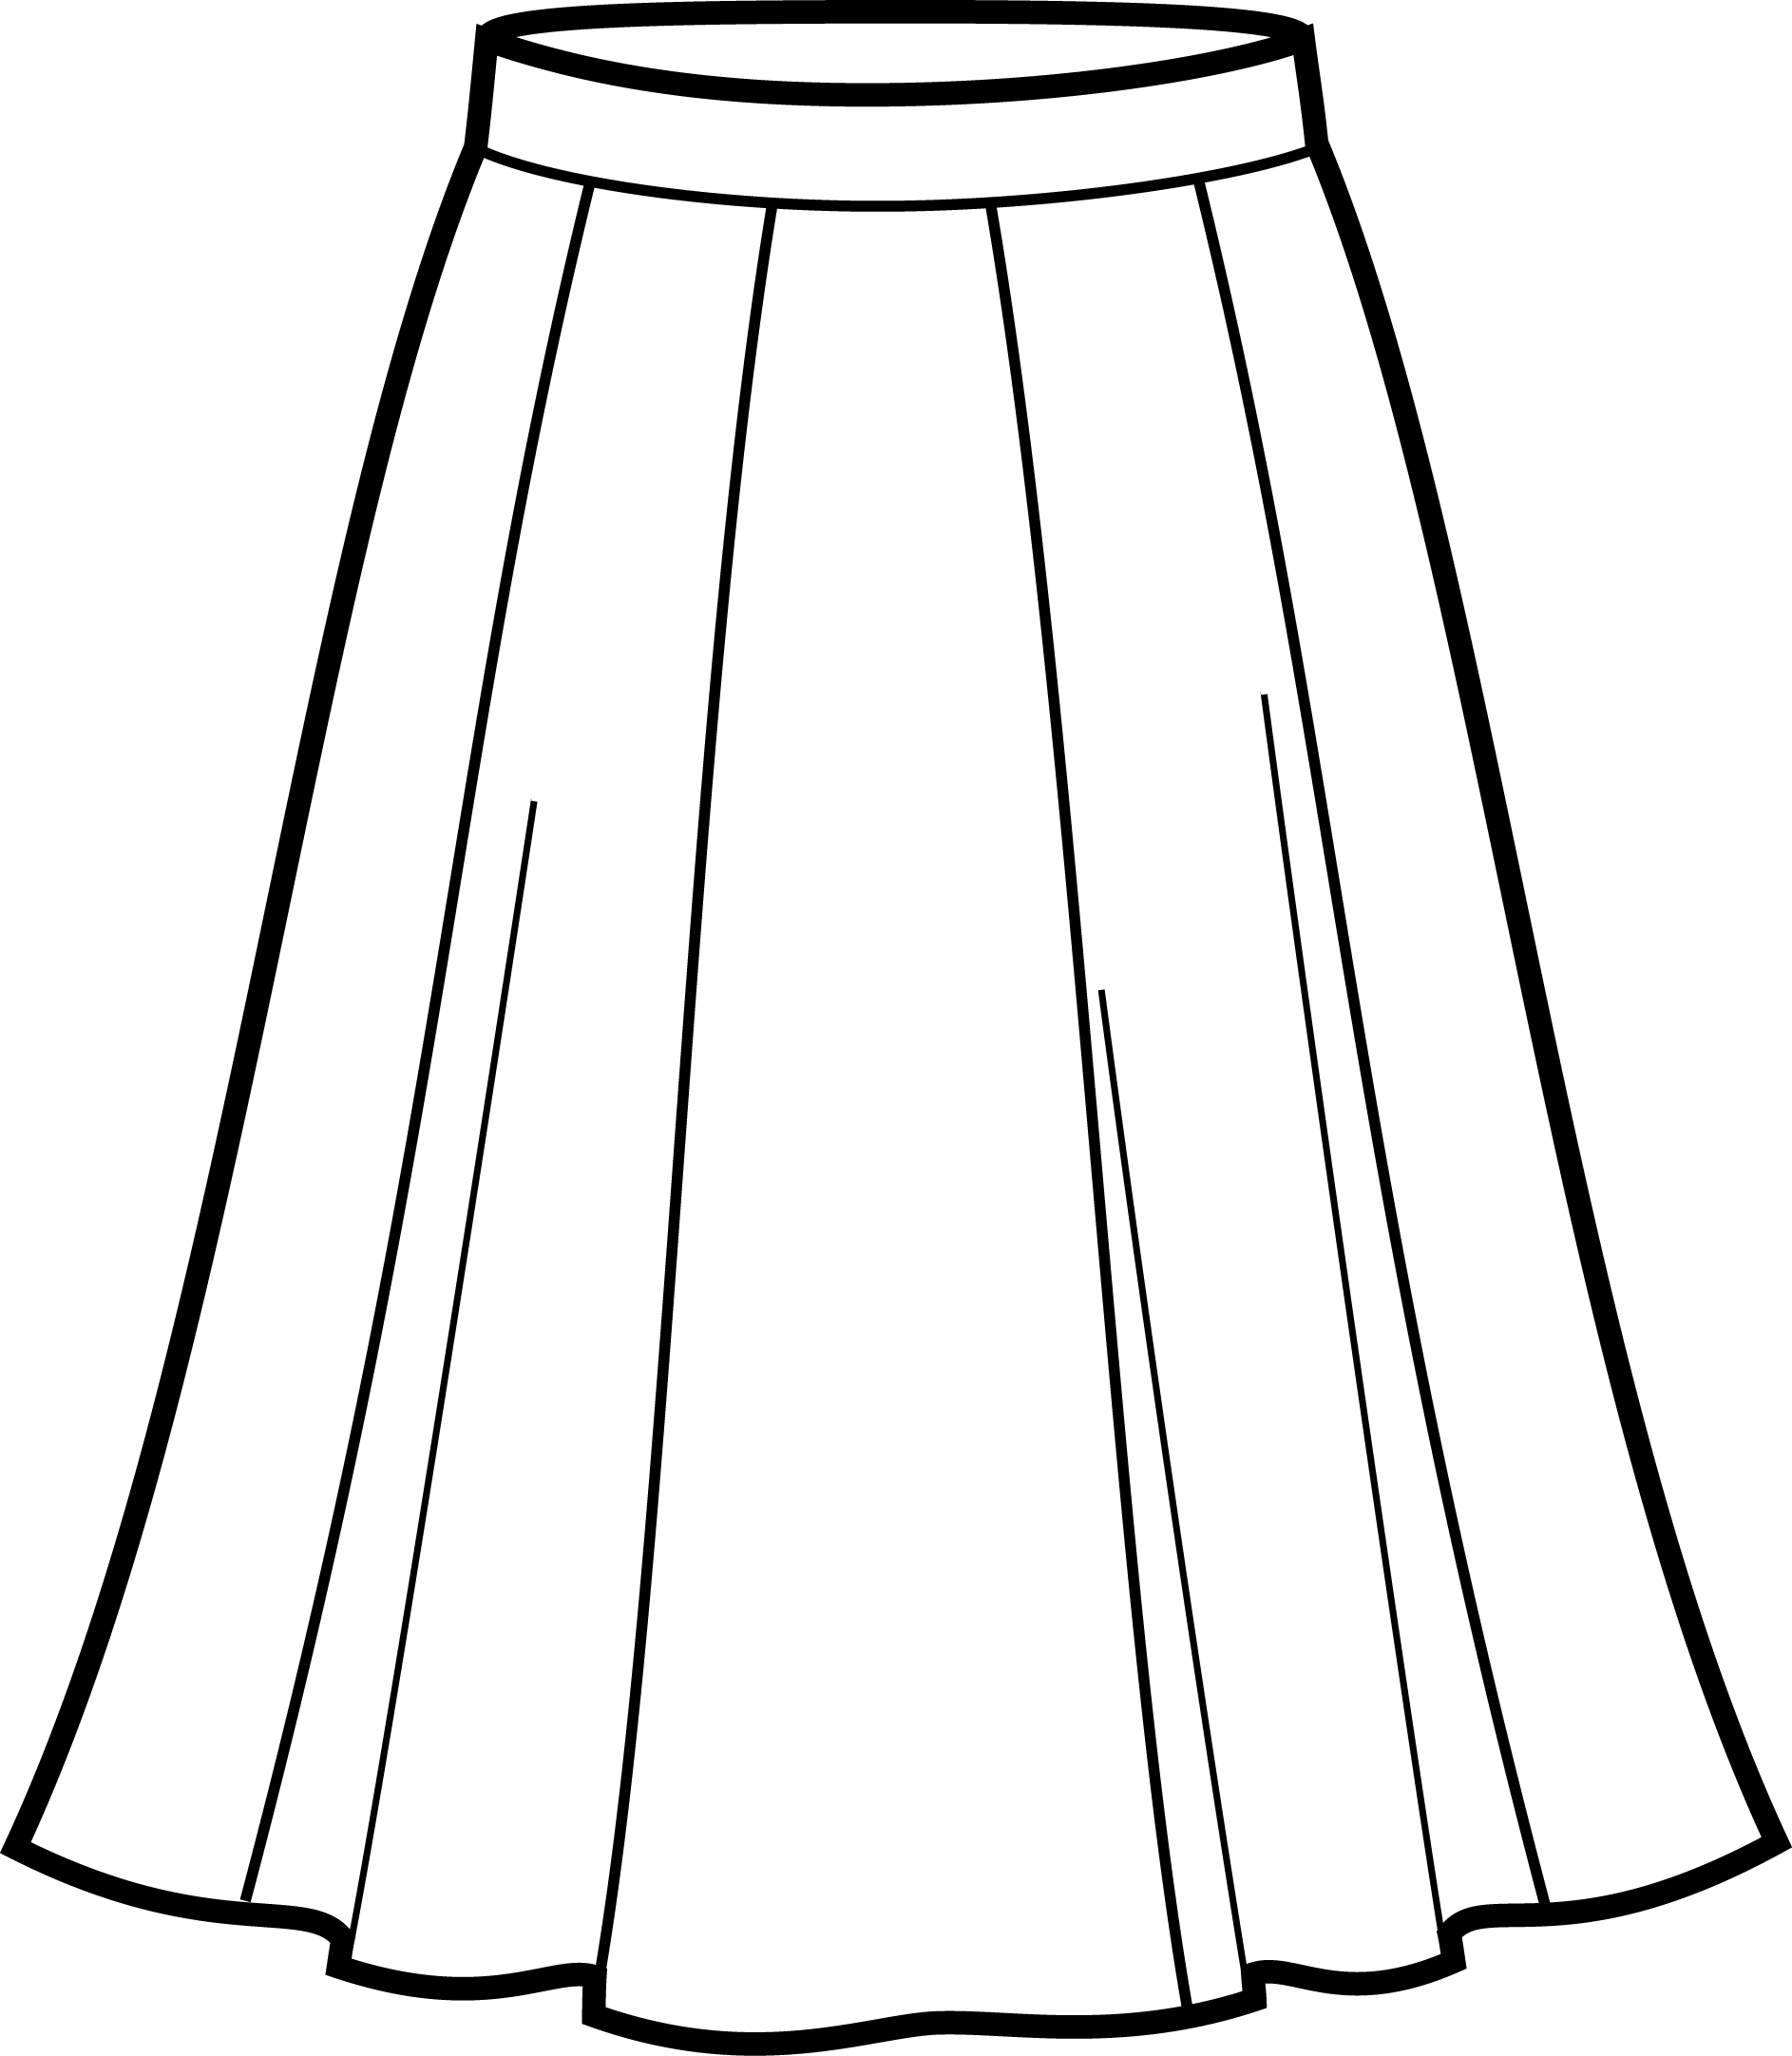 Gored skirt